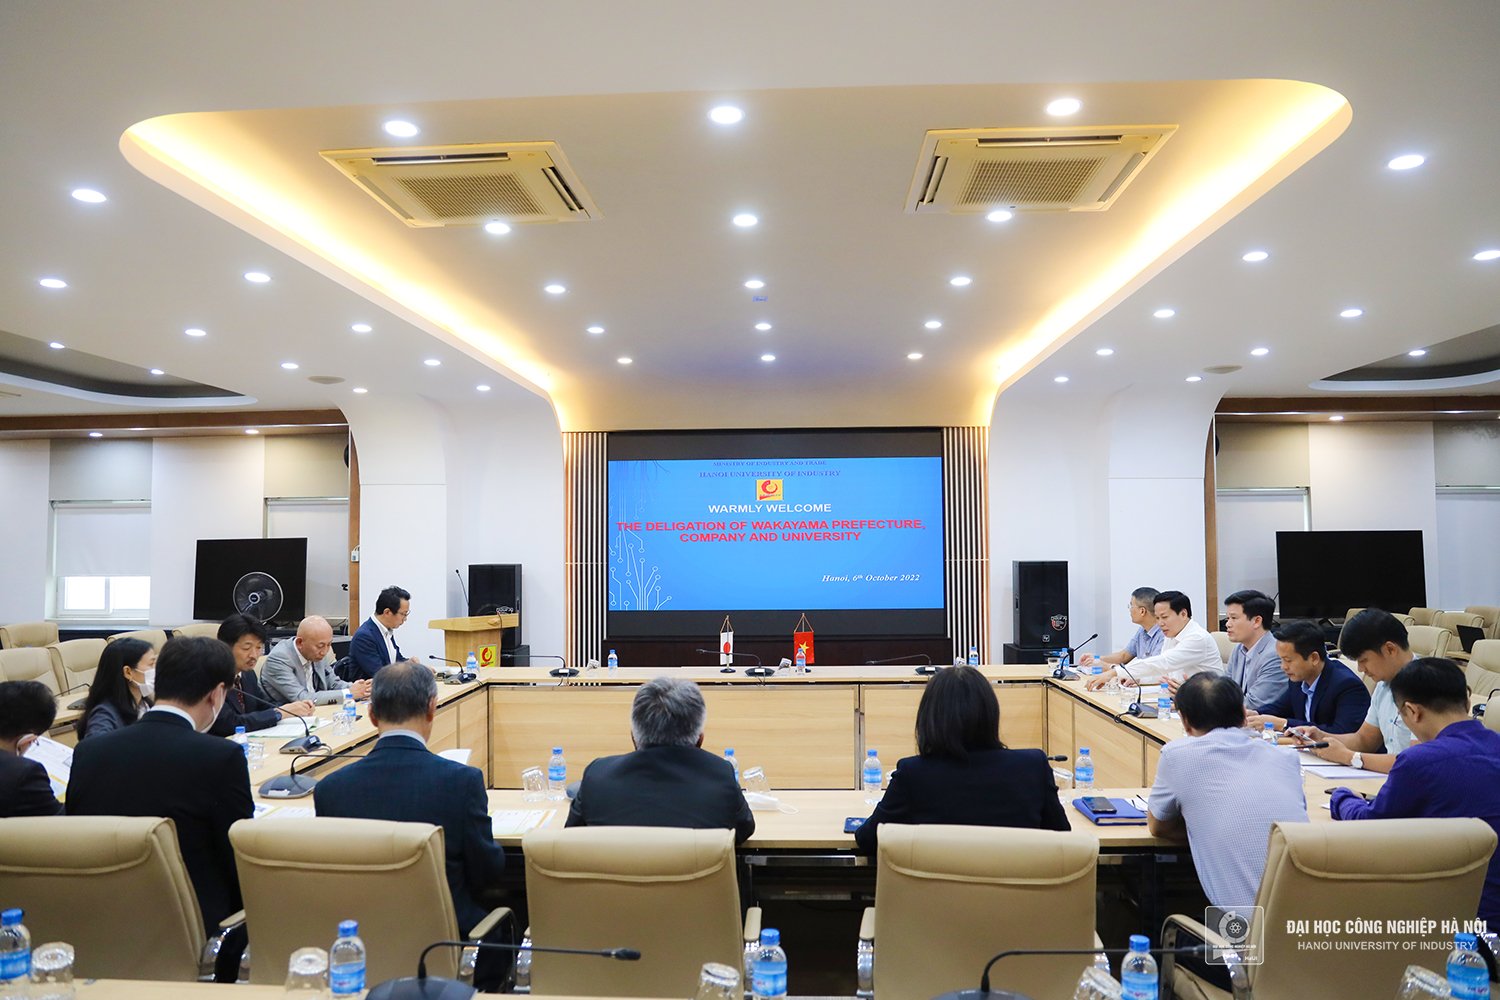 Hanoi University of Industry establishes cooperative relationship with Wakayama province, Japan